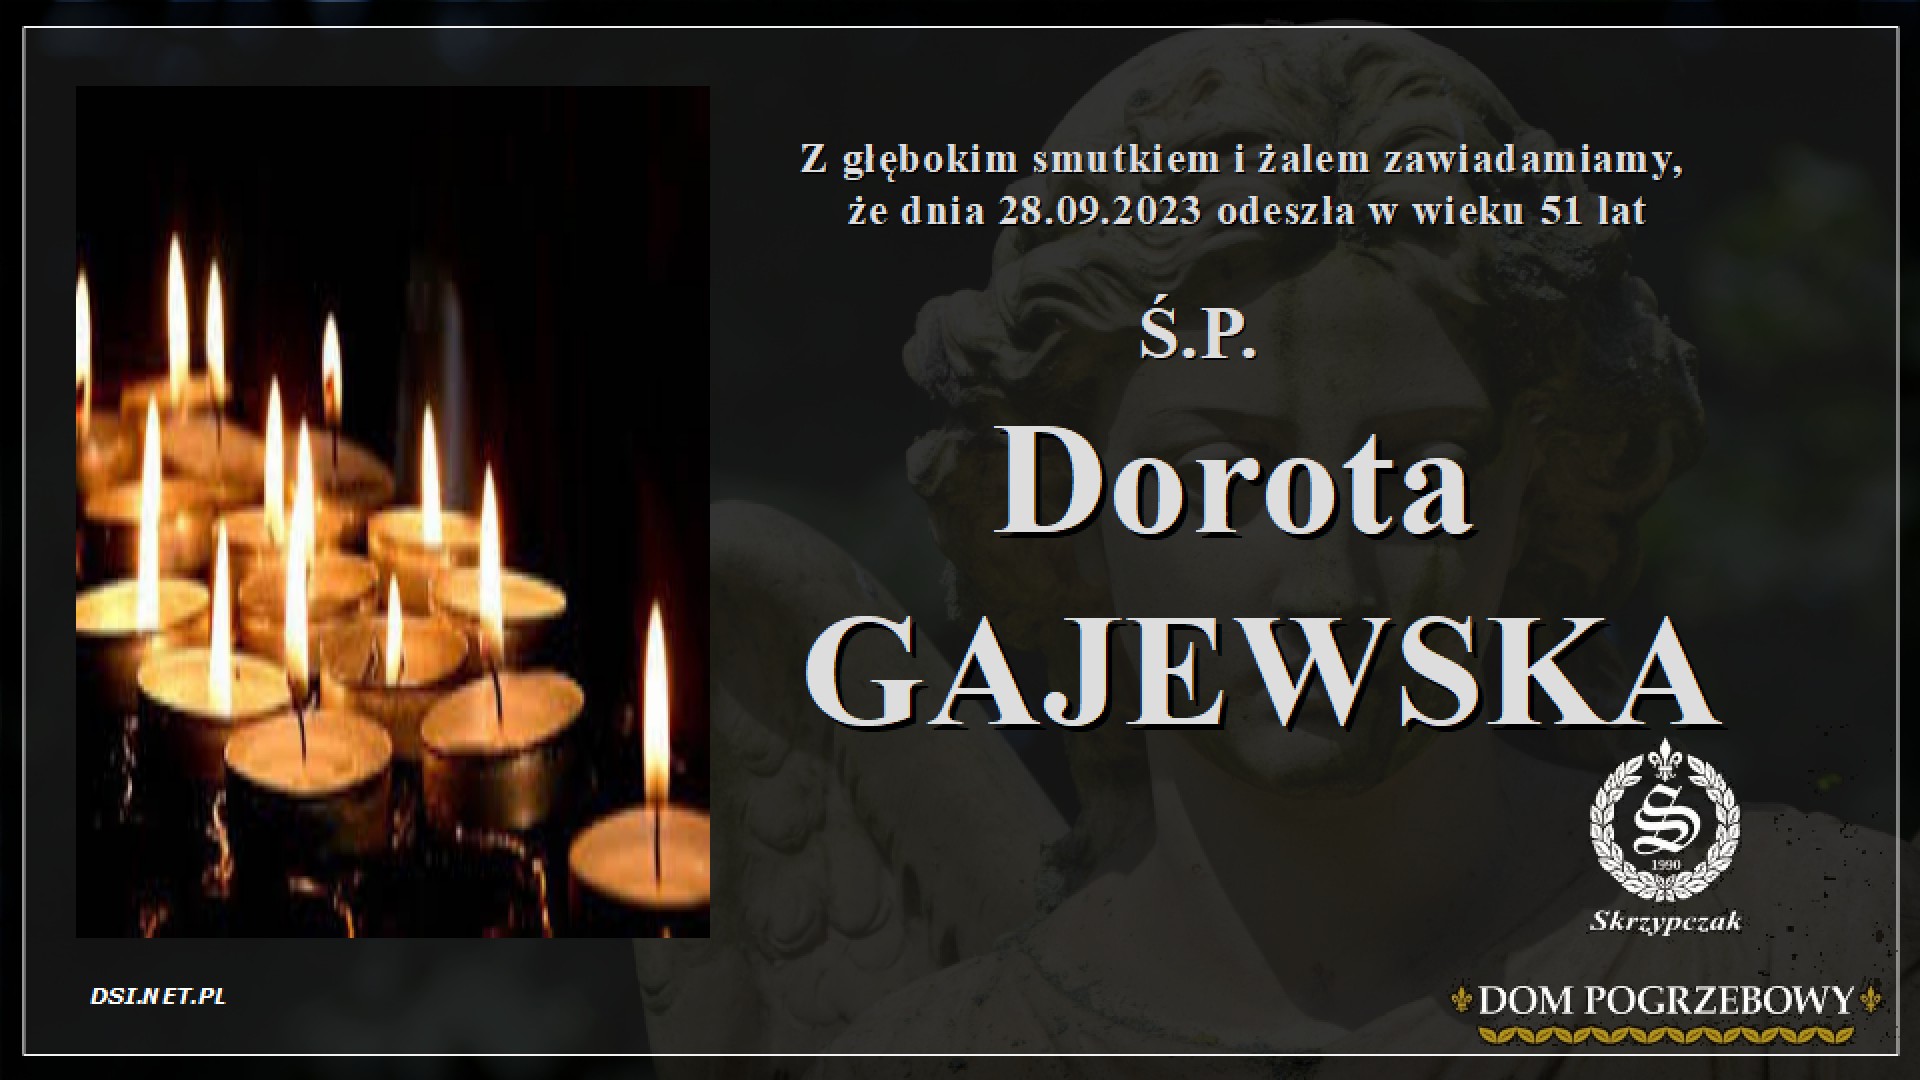 Ś.P. Dorota Gajewska